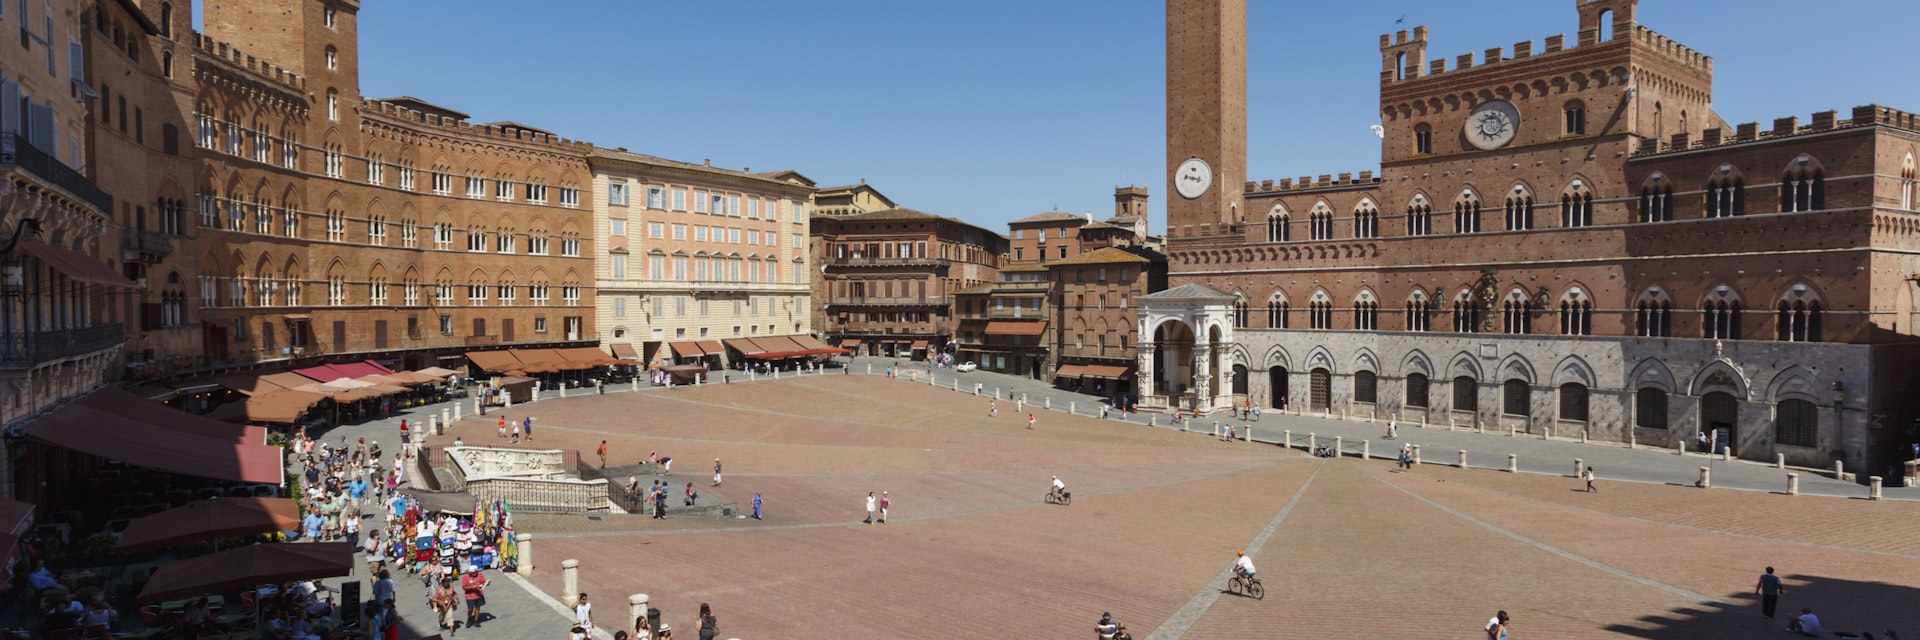 Siena, Tuscany, Italy. Piazza del Campo.